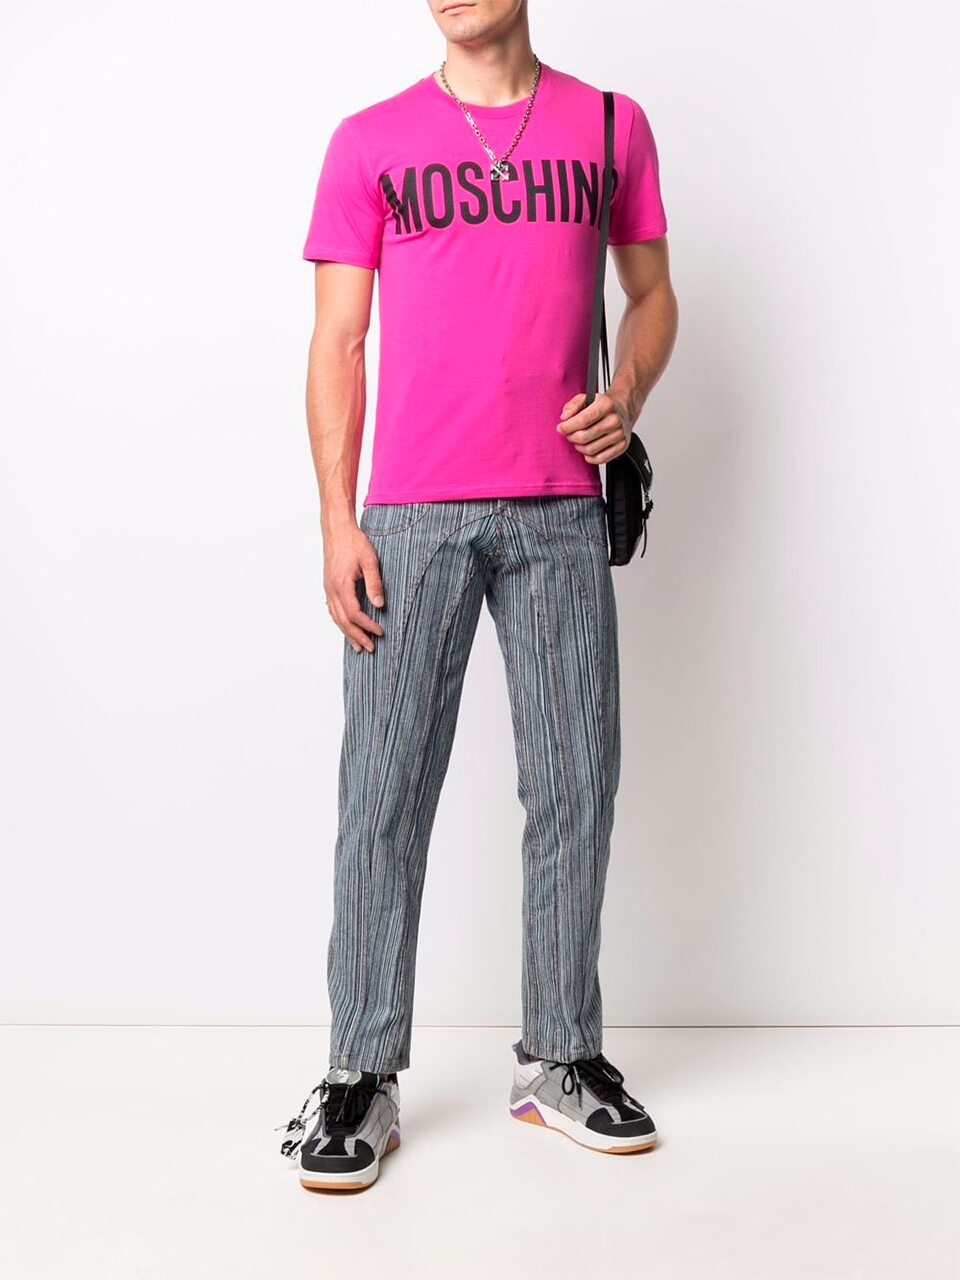 Imagem de: Camiseta Moschino Rosa com Logo Preto